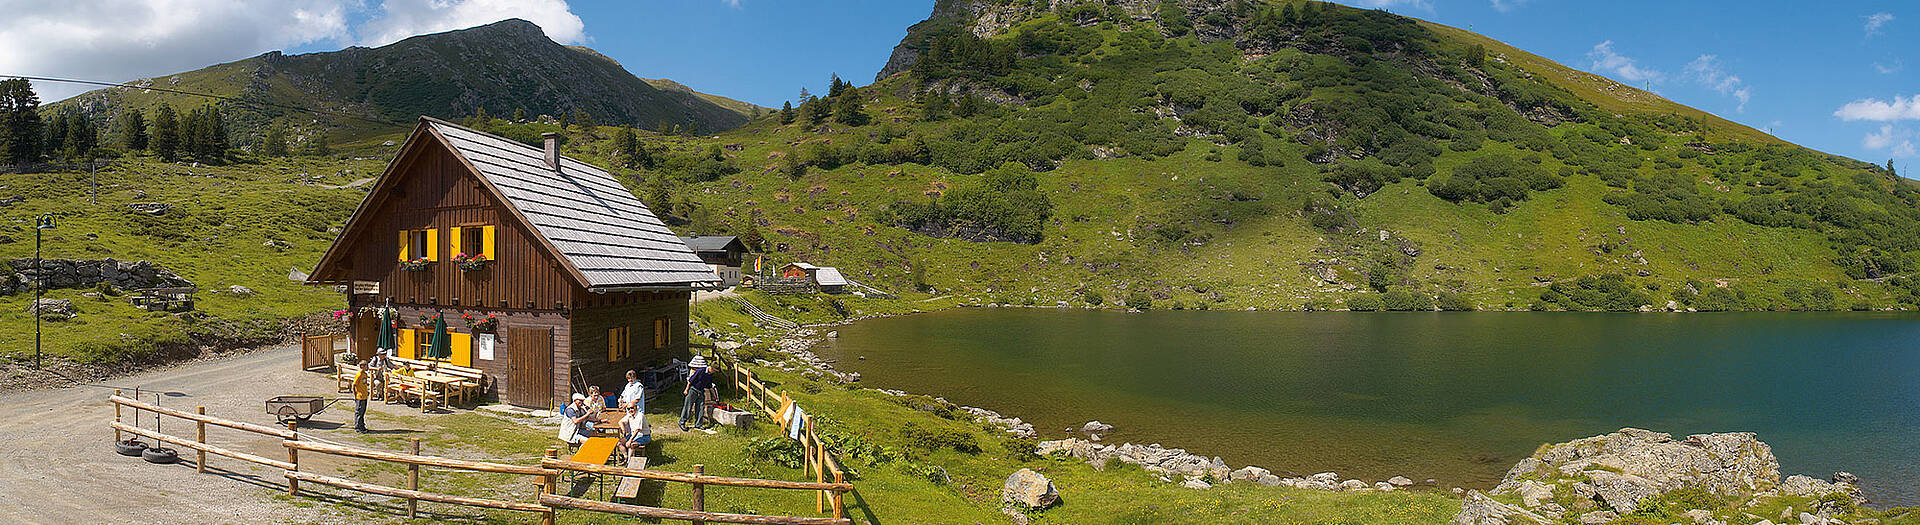 Alpe-Adria-Trail Falkertsee Halter Huette 